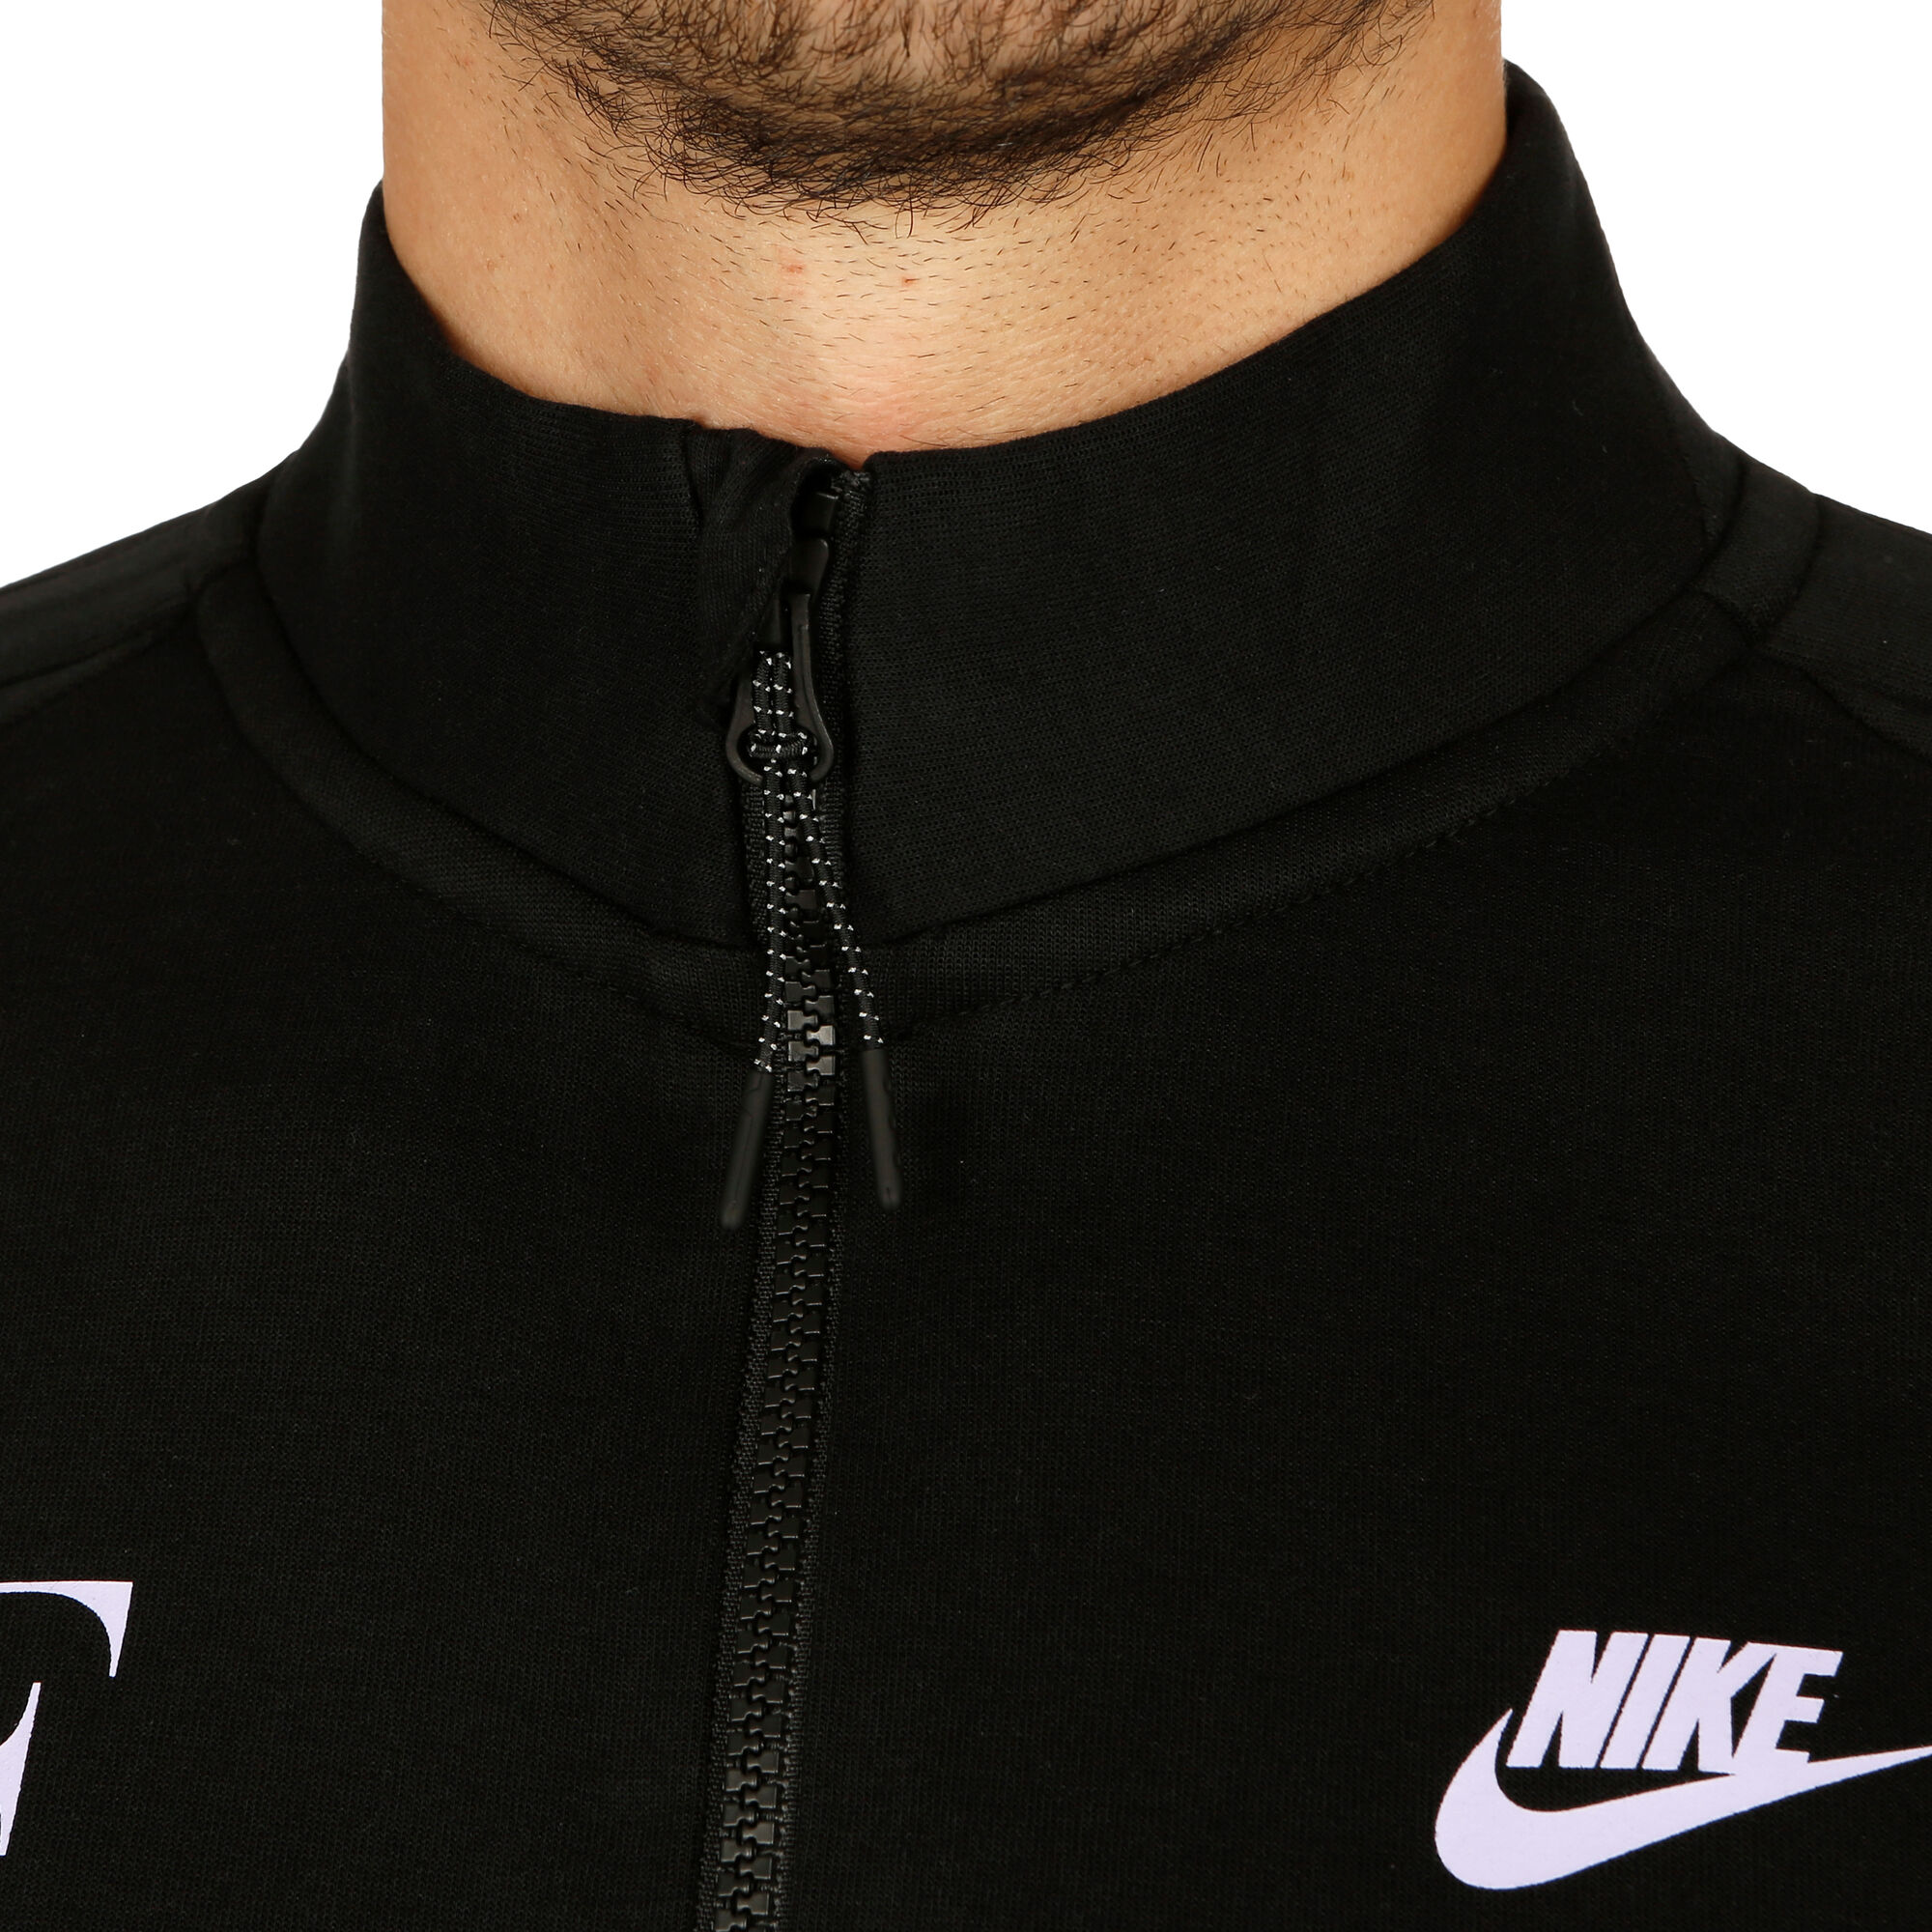 Nike Roger Federer Premier Chaqueta Entrenamiento - Negro, Morado compra online | Padel-Point